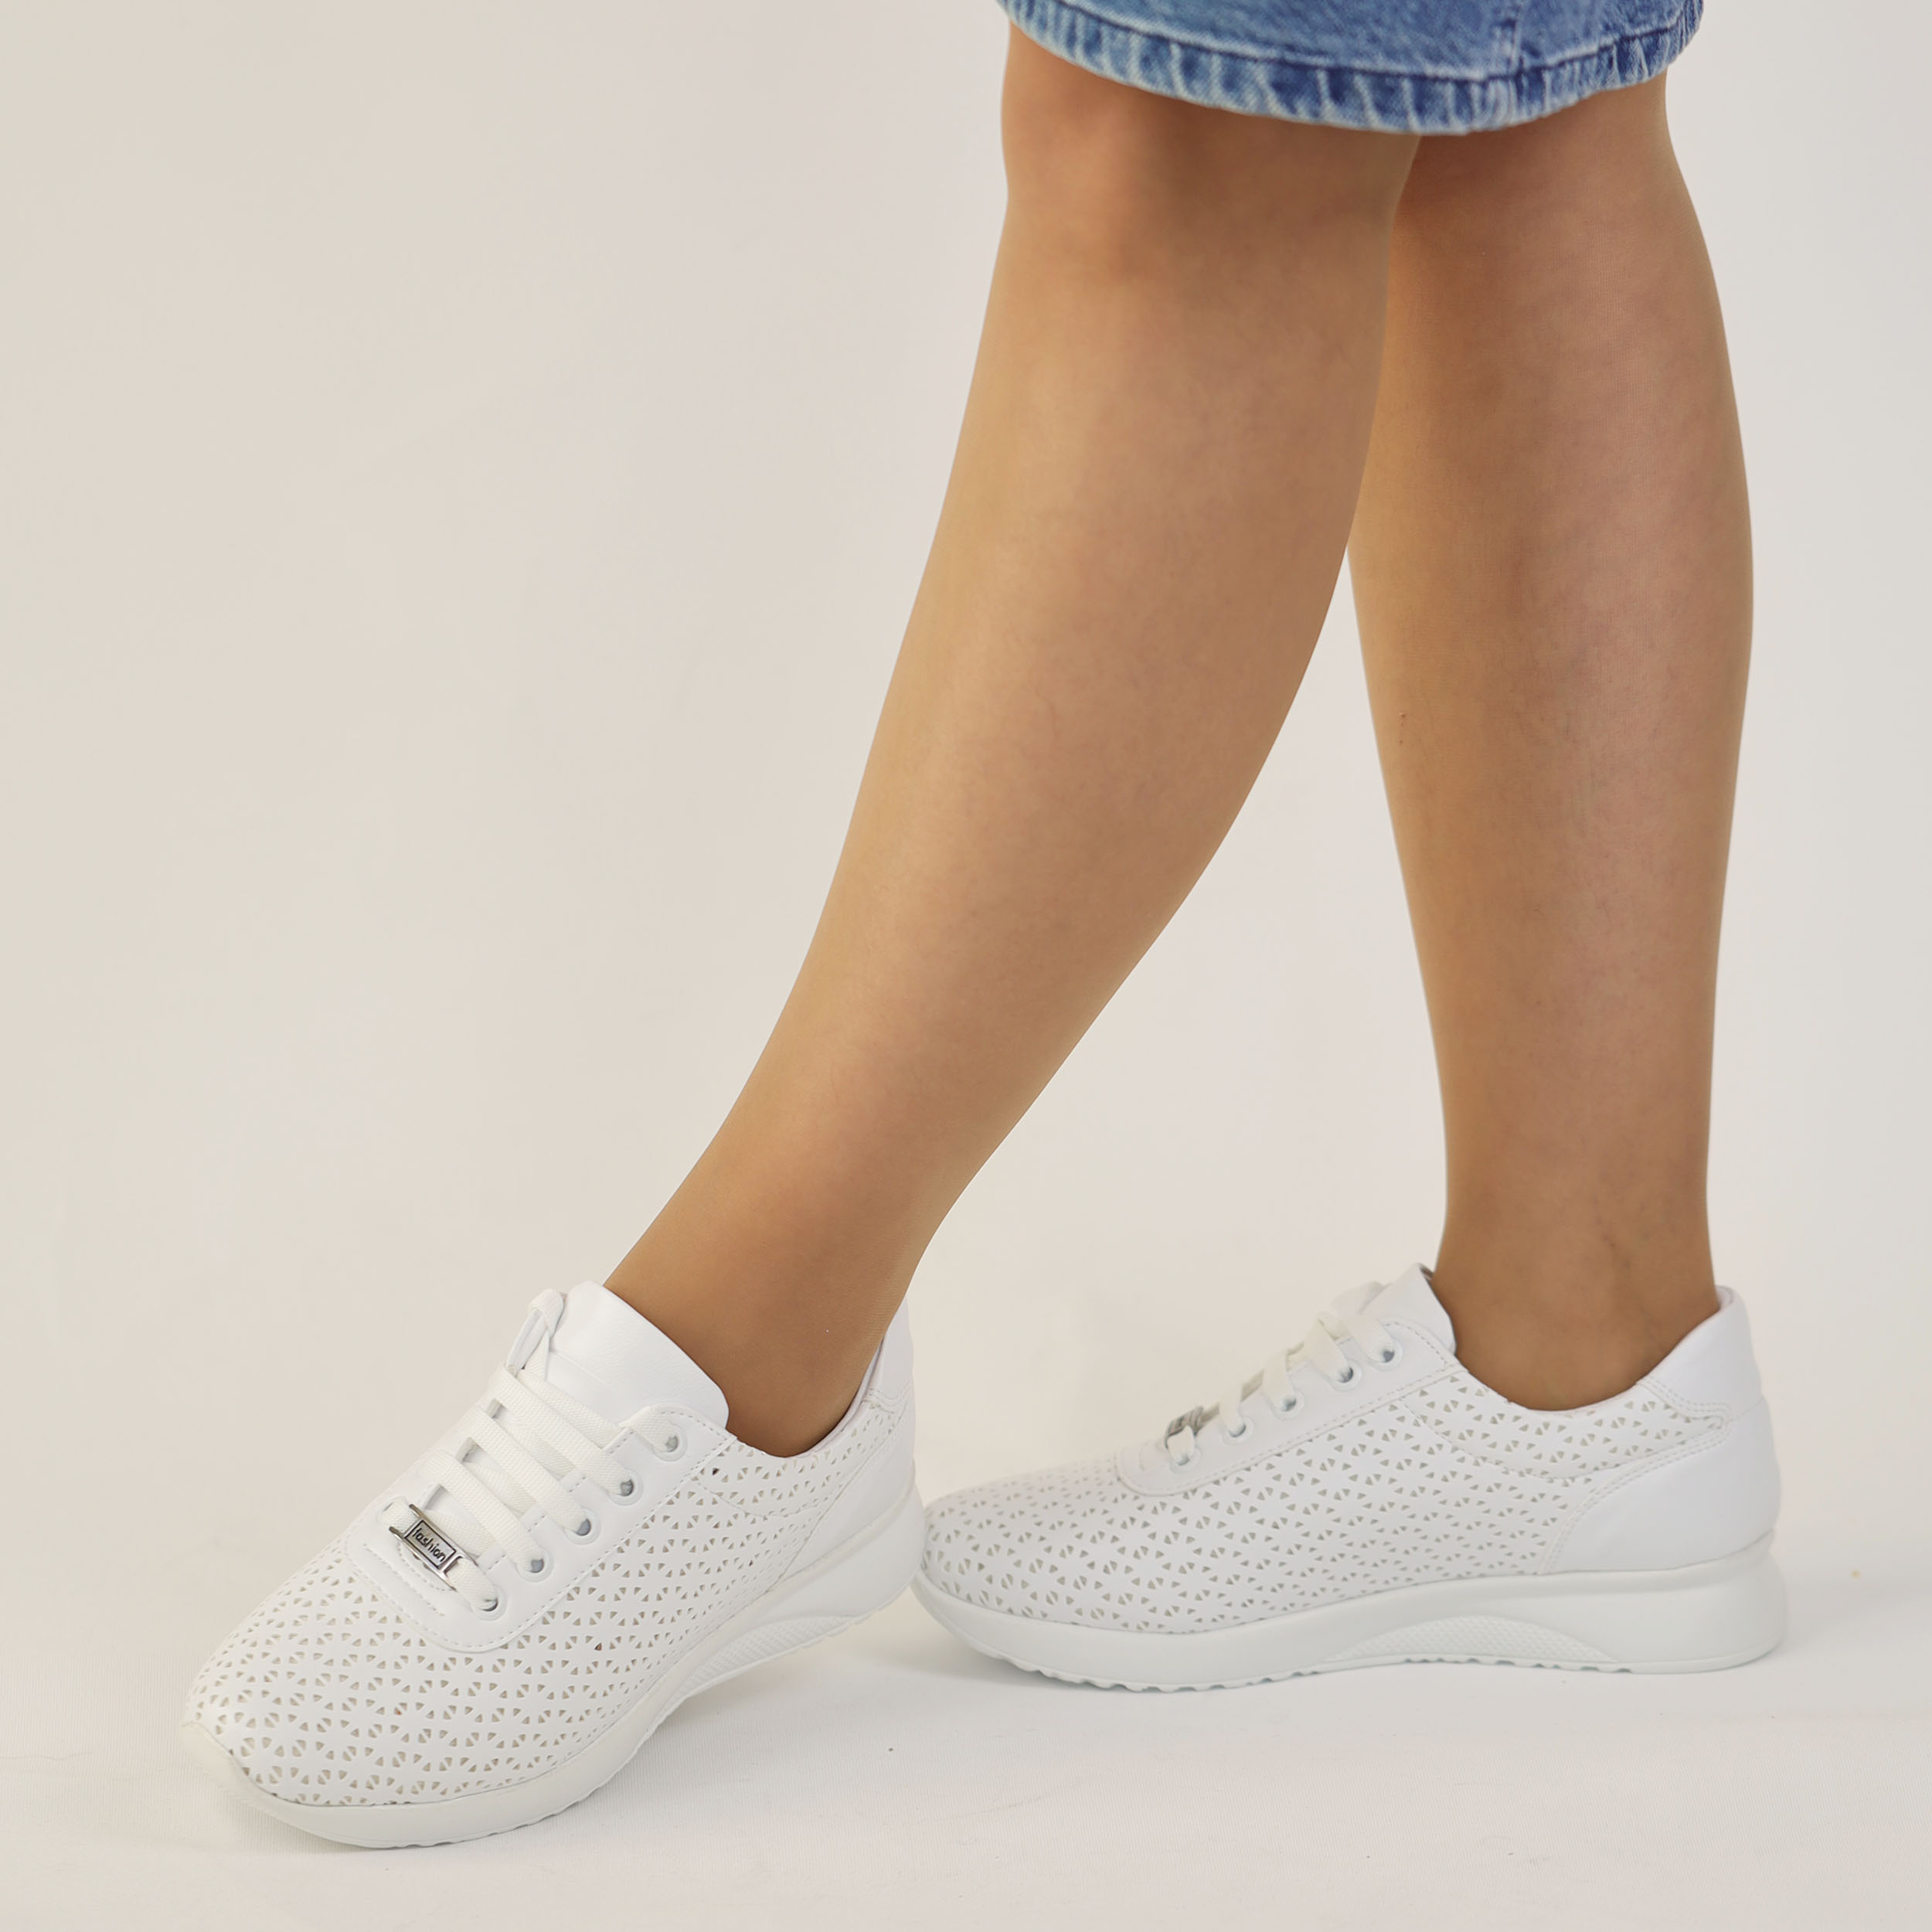 Kadın Kalın Tabanlı Bağcıklı Beyaz Sneakers Günlük Spor Rahat Ayakkabı, Renk: Beyaz, Beden: 36